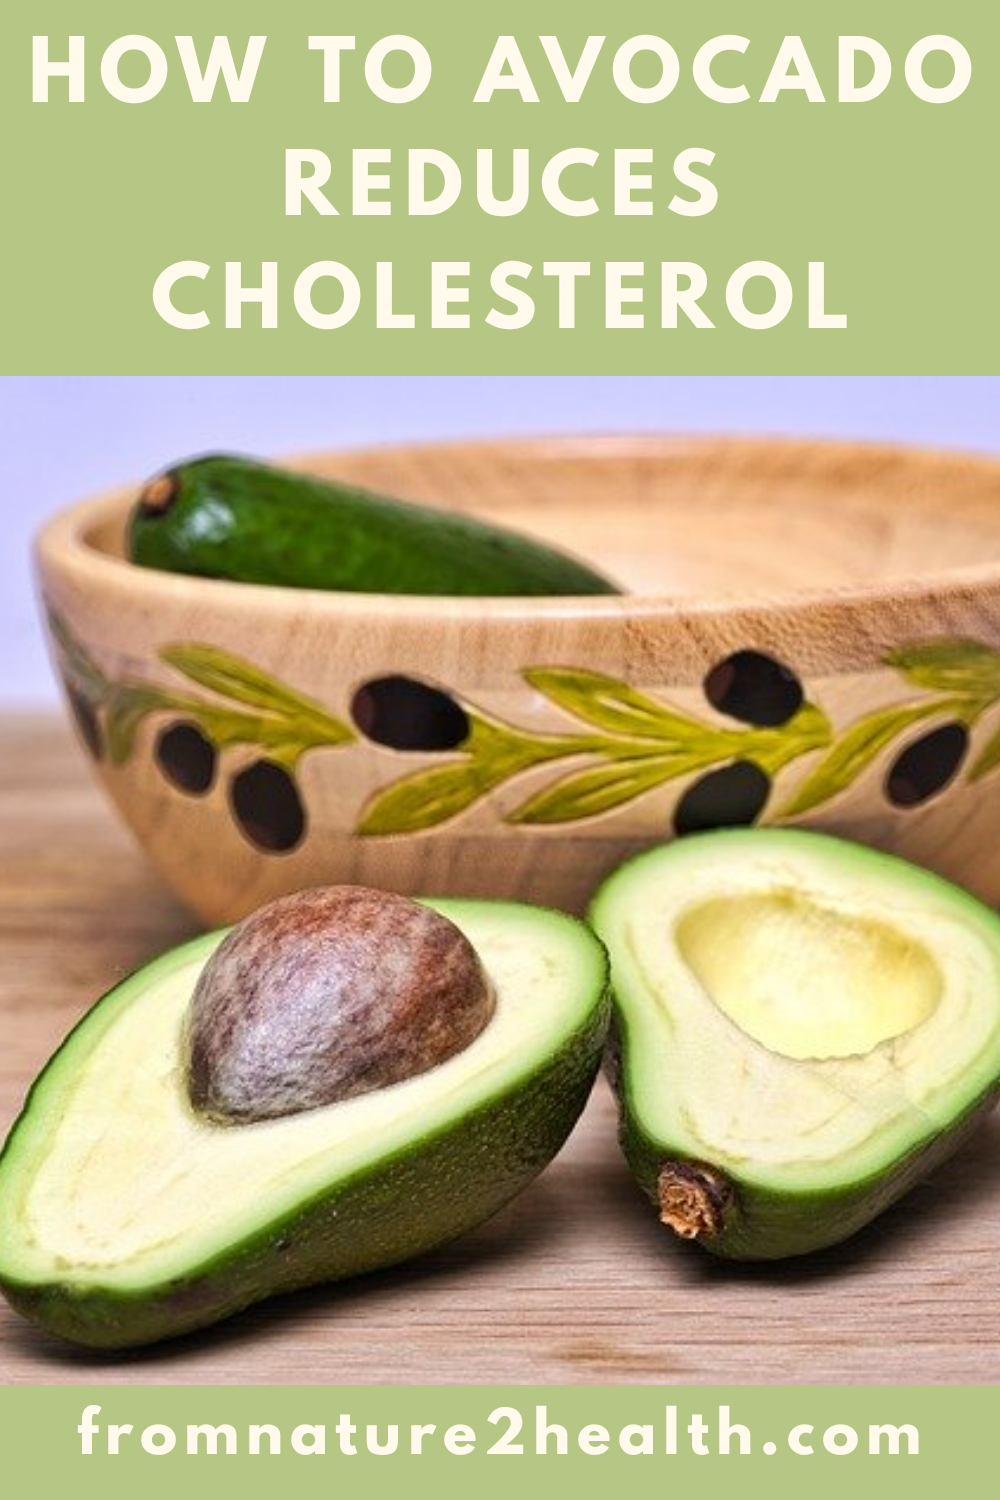 How to Avocado Reduces Cholesterol